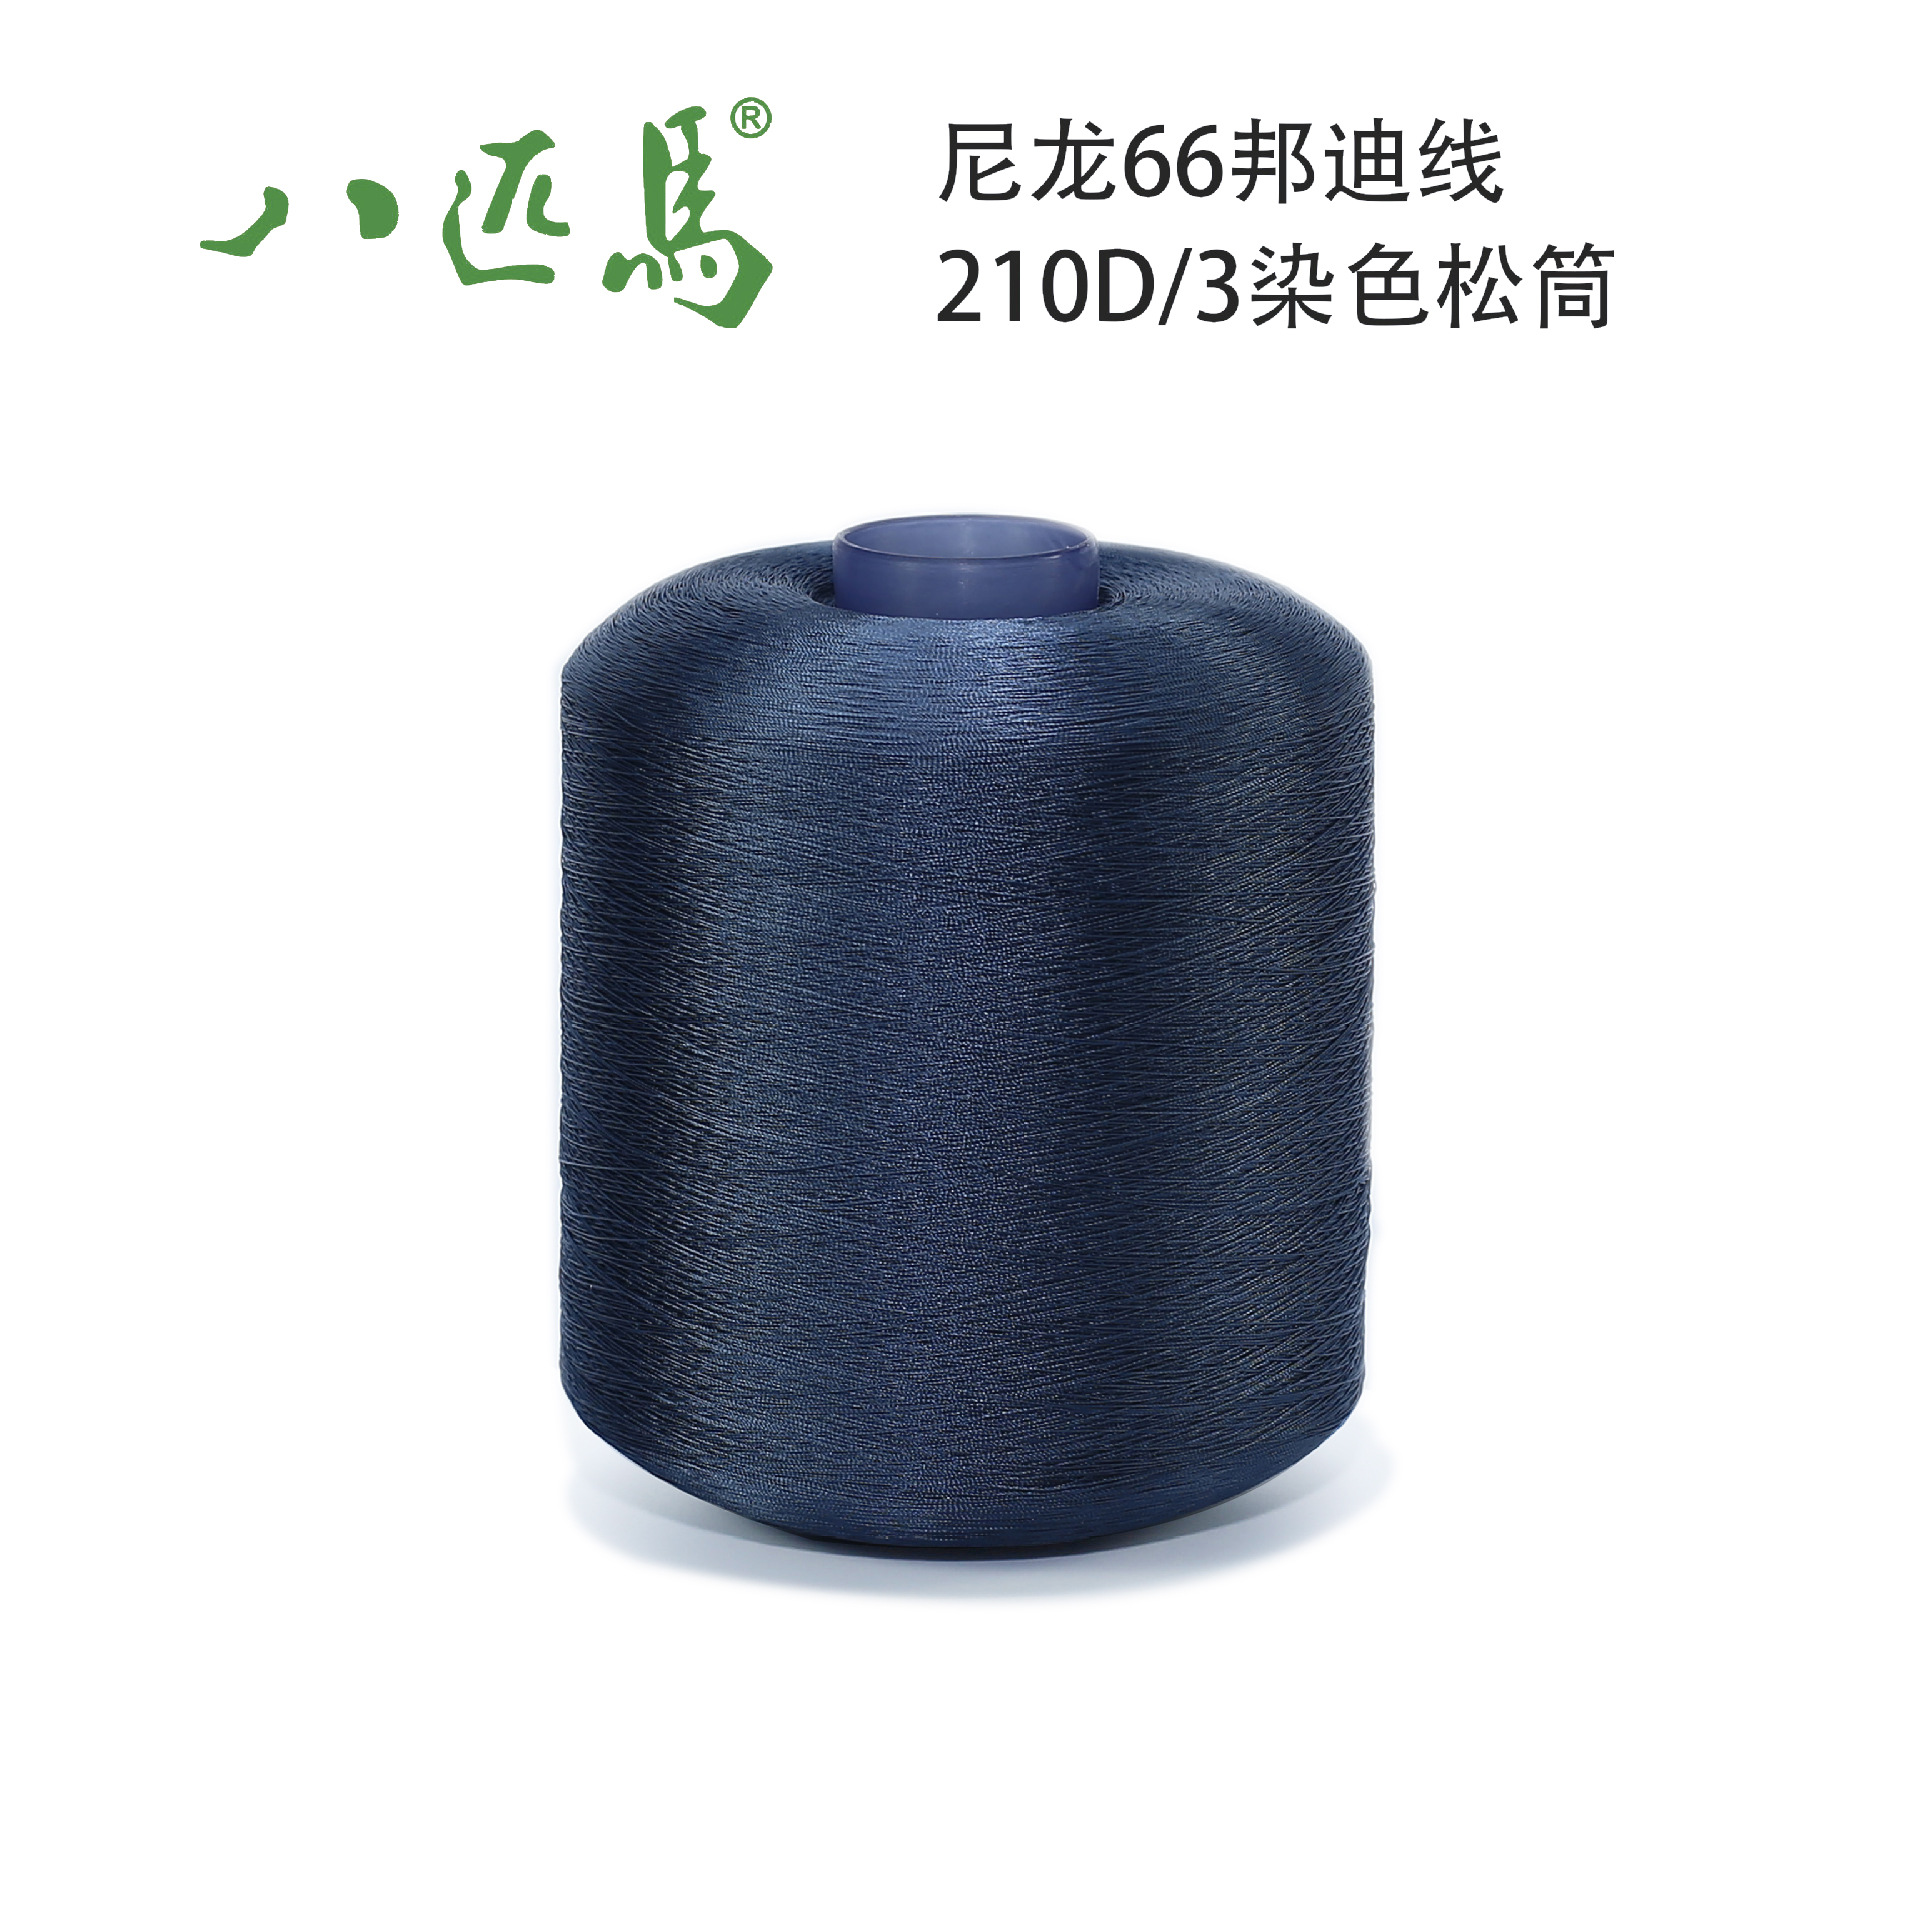 尼龙66邦迪线210D/3染色松筒环保高速家纺纺织邦迪线不散股车缝线